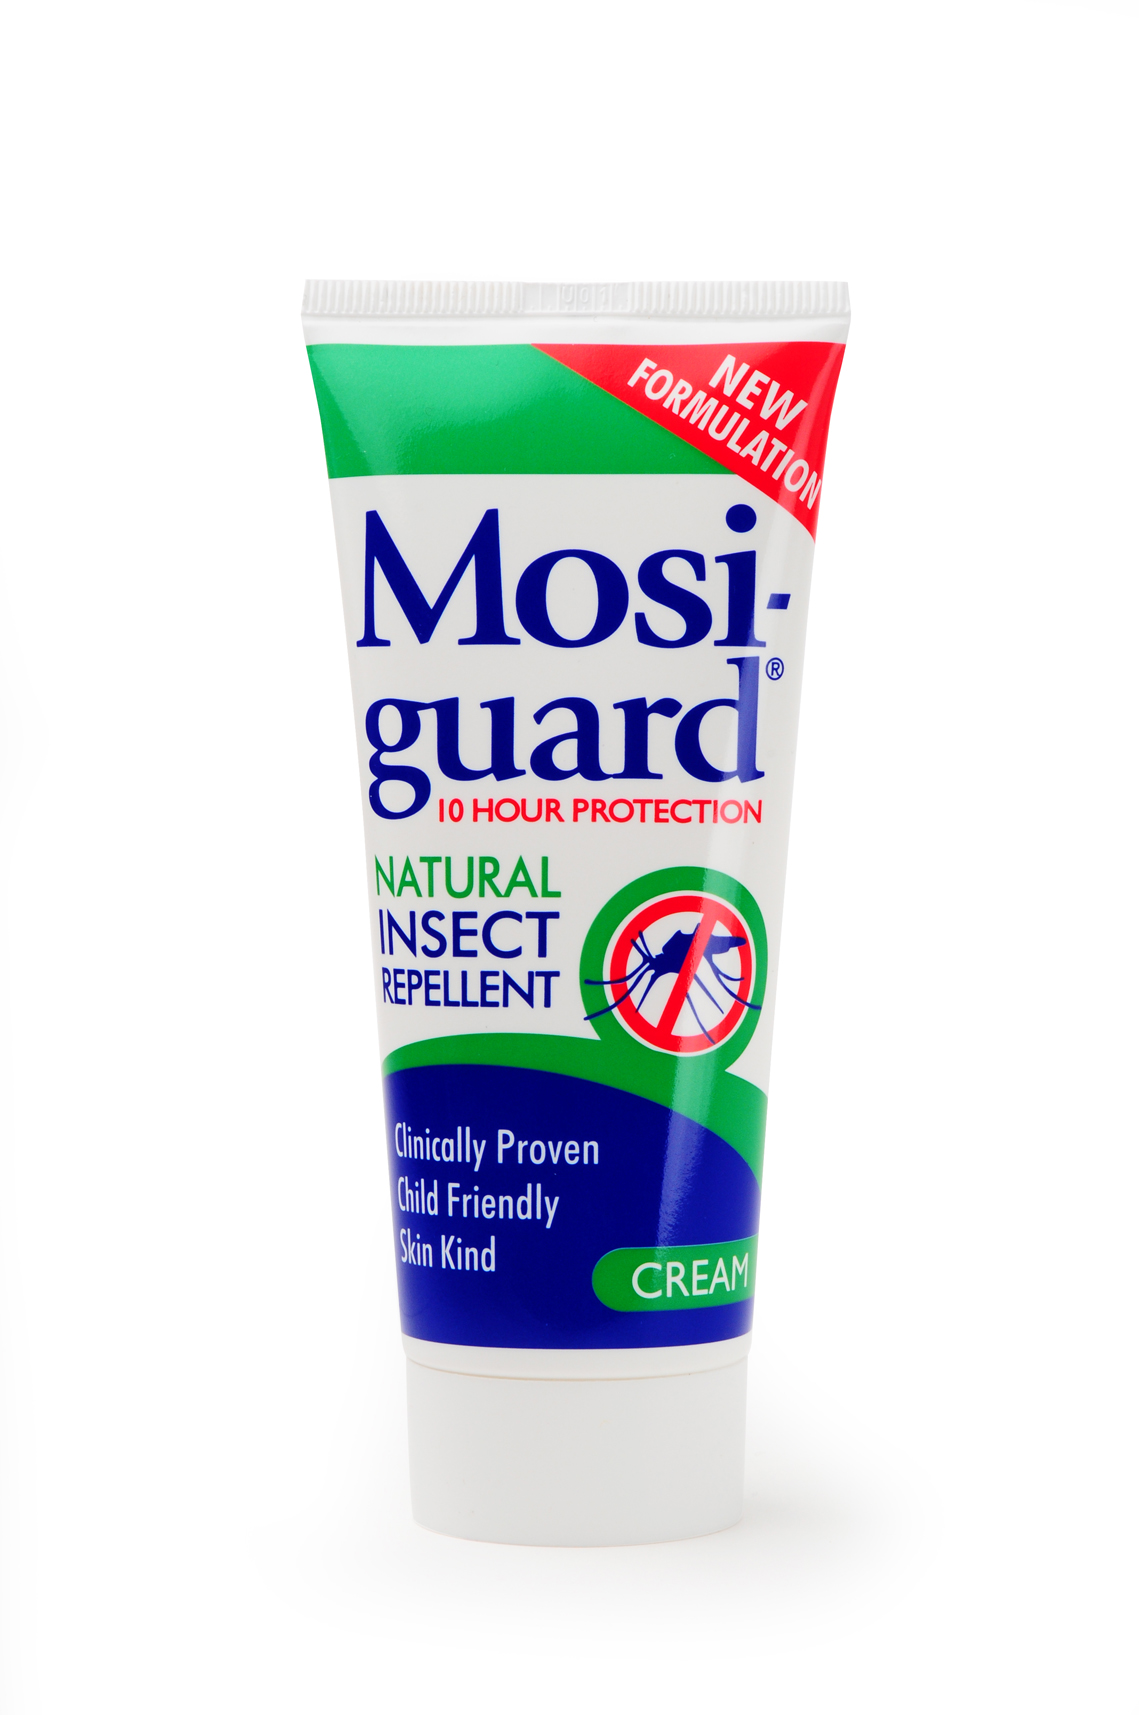 Mosi-guard cream